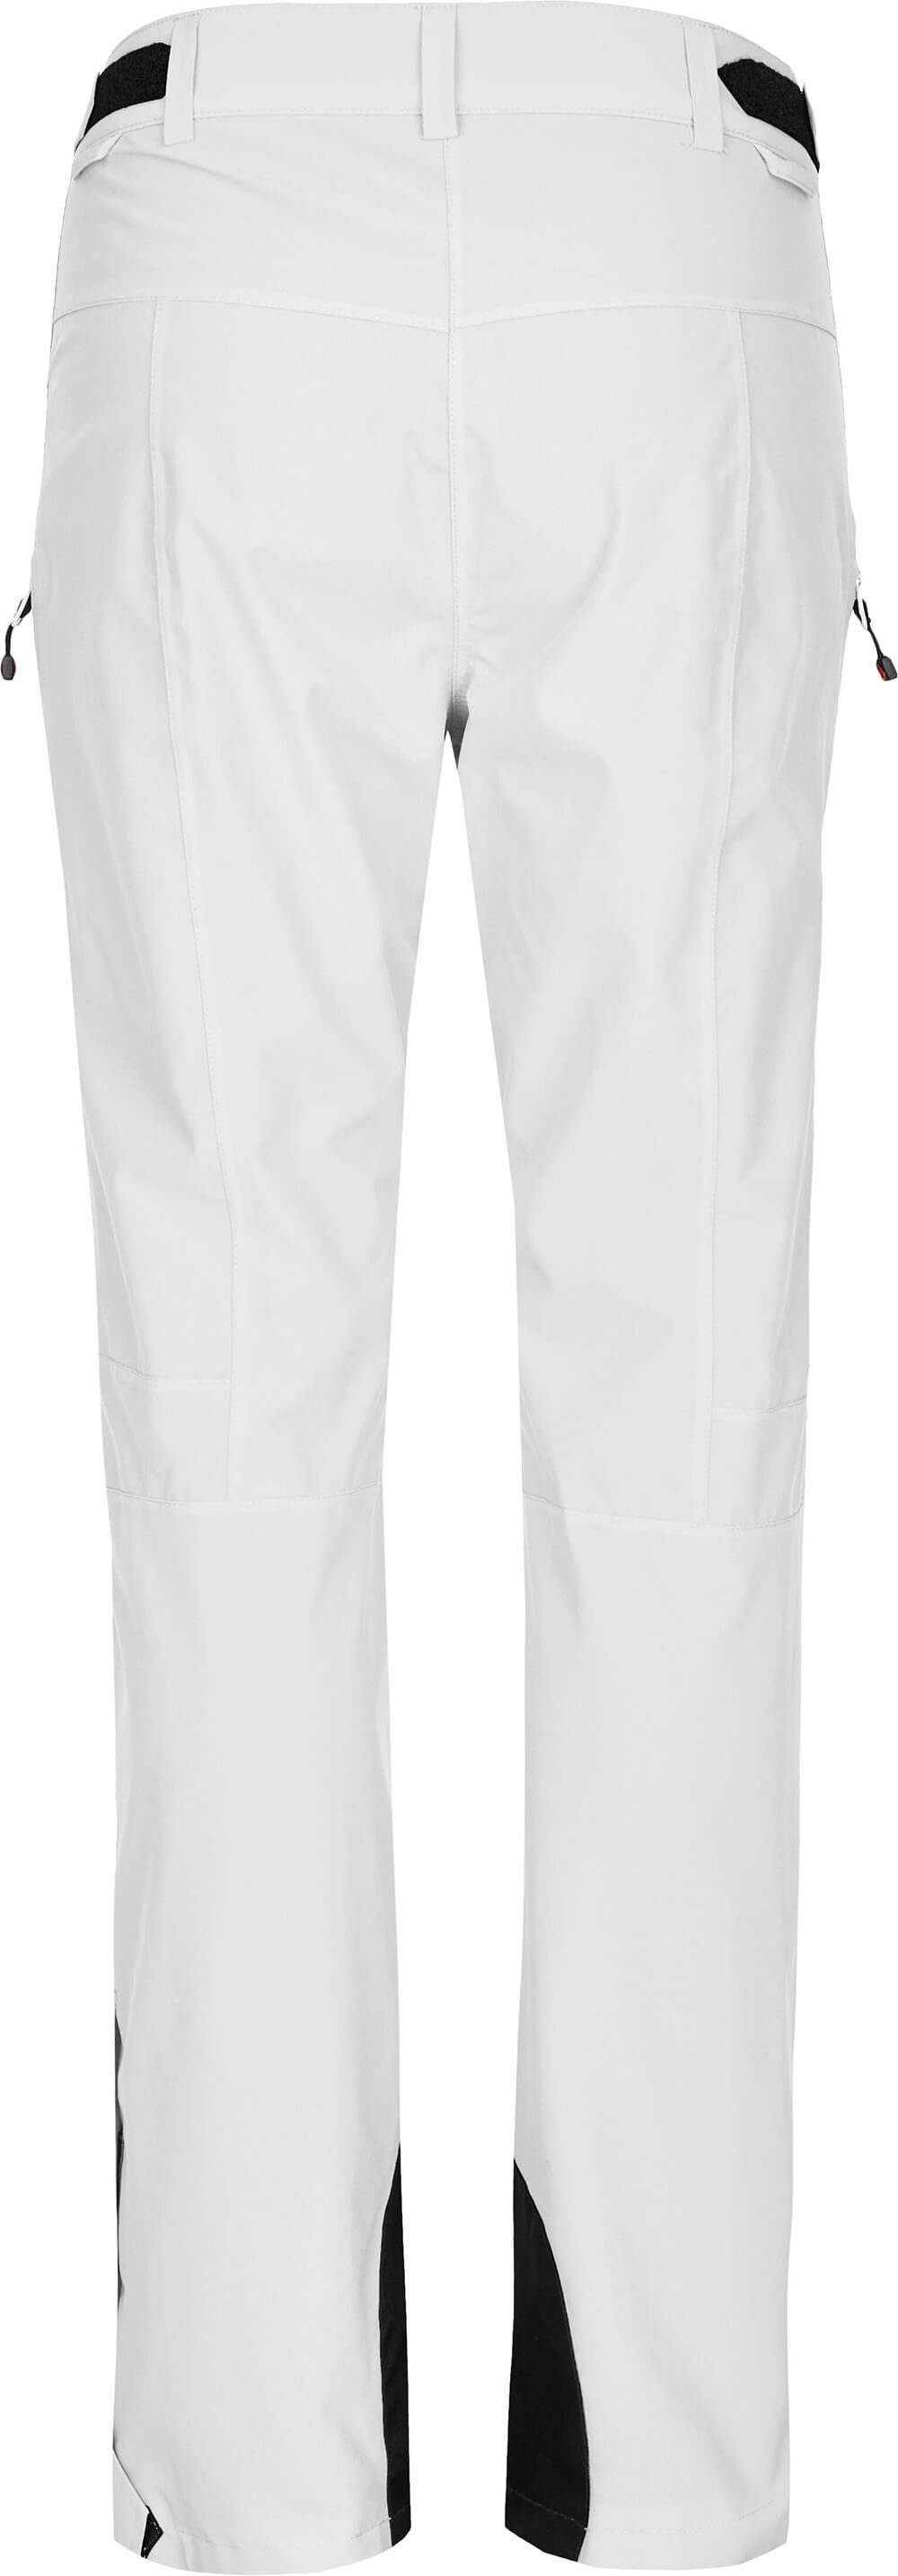 Bergson Skihose, Wassersäule, unwattiert, mm ICE Slim light weiß Damen Skihose Normalgrößen, 20000